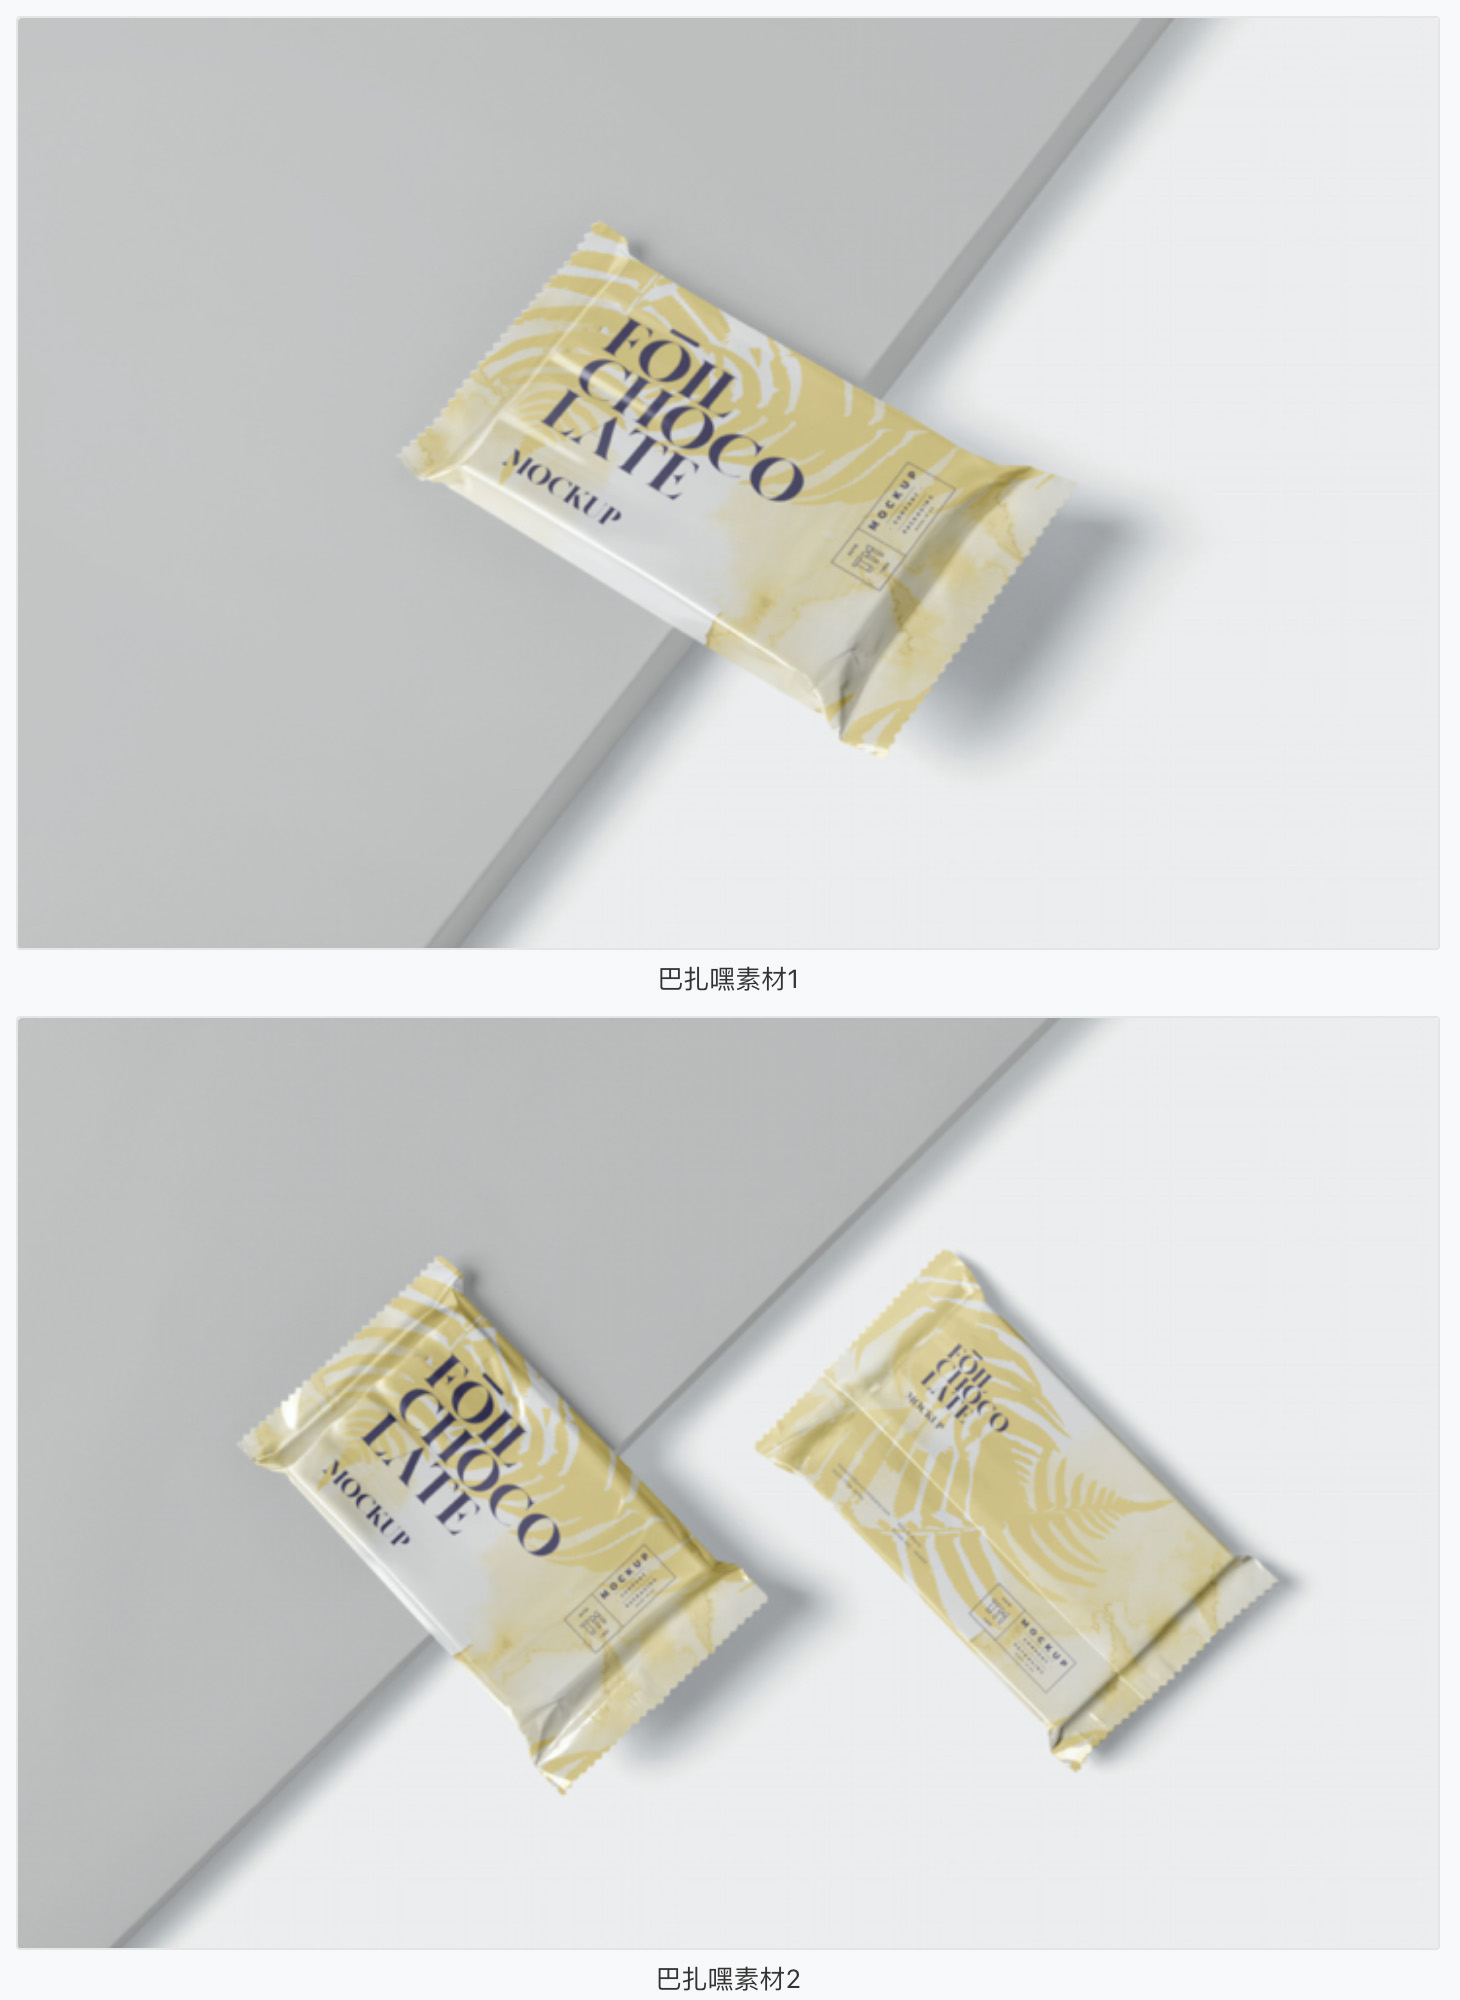 【零食样机】箔纸食品包装袋VI设计样机巧克力饼干零食包装智能贴图PSD素材